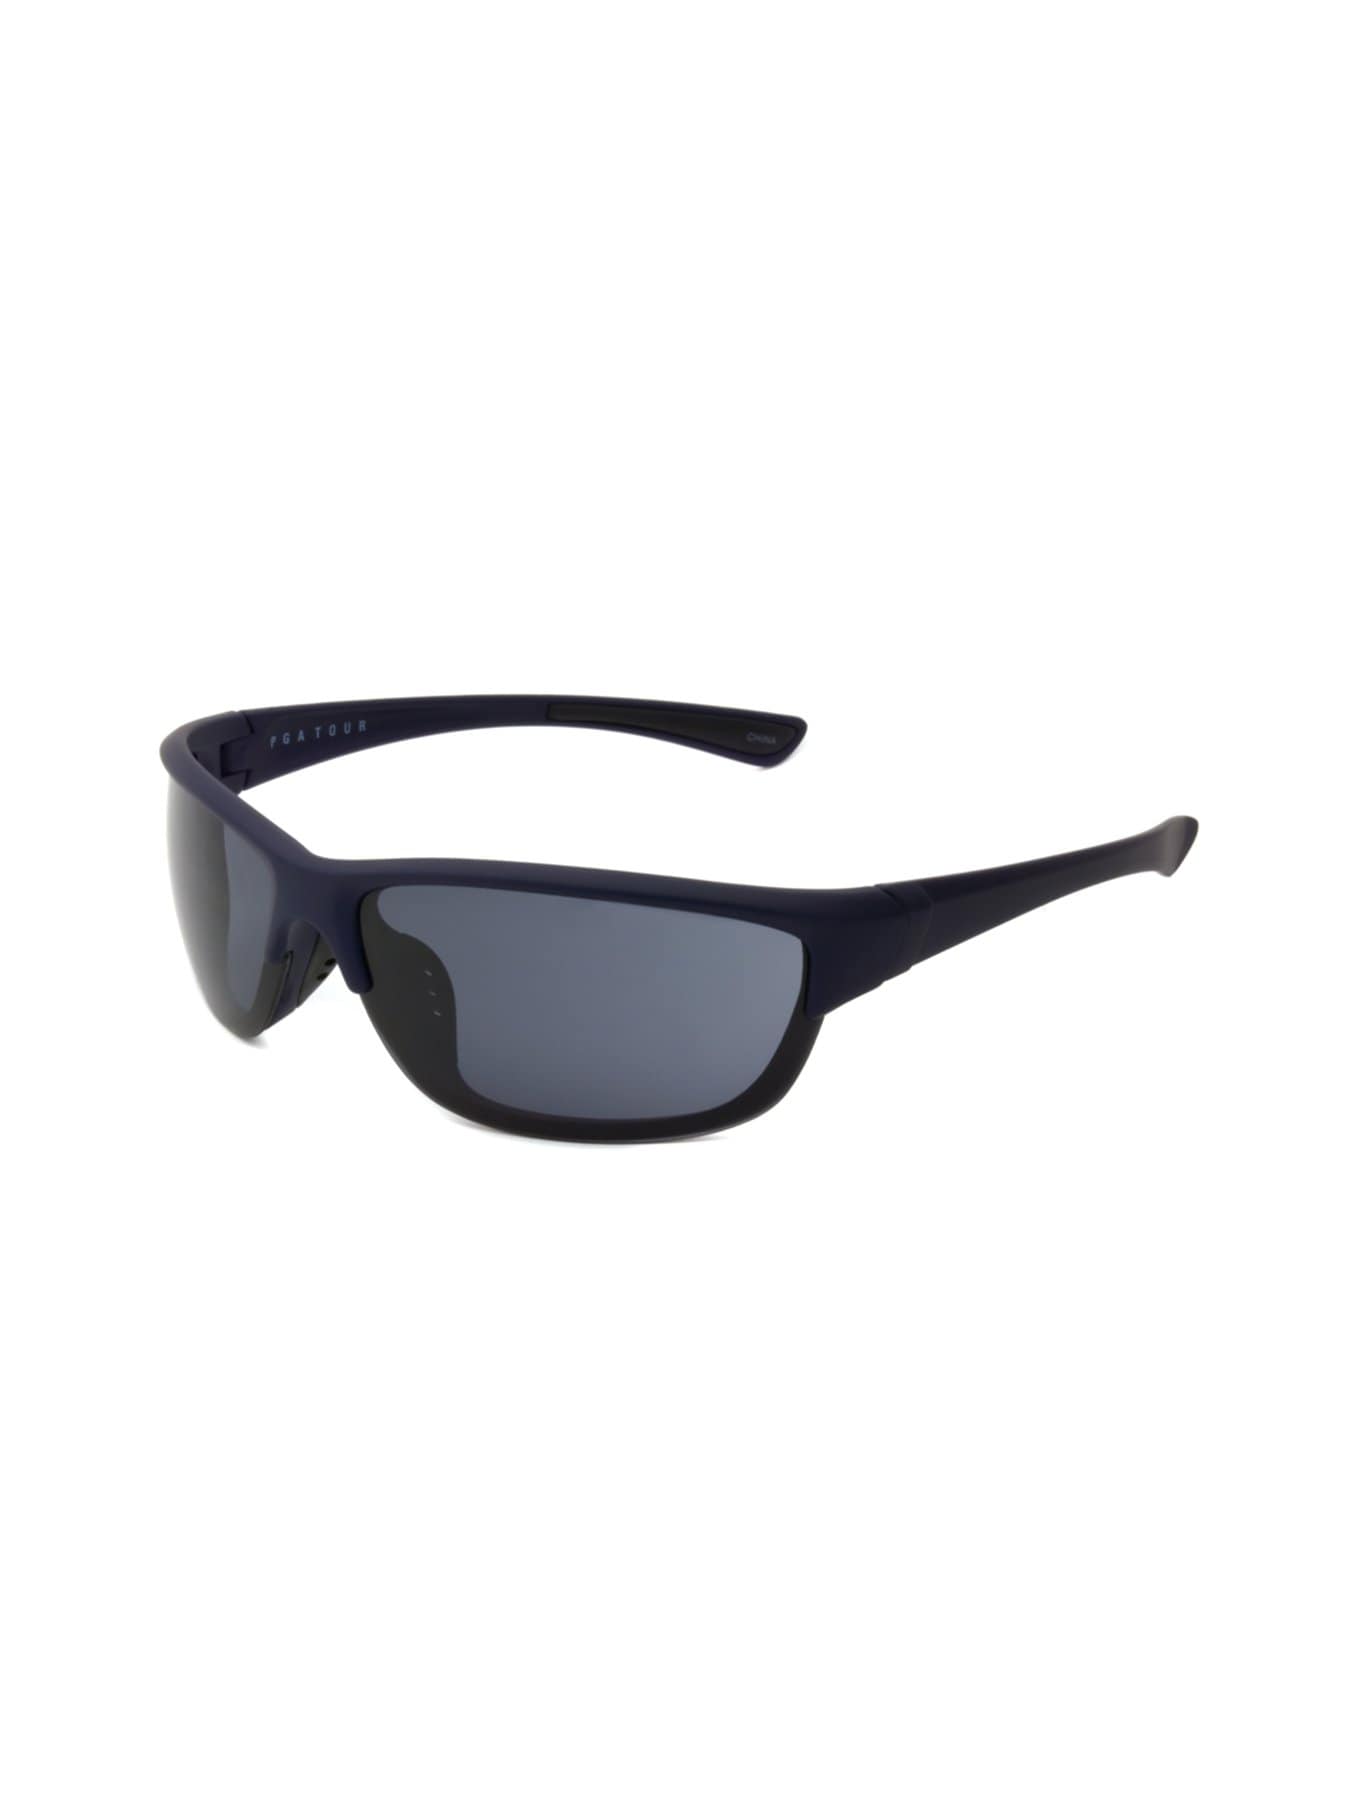 PGA TOUR Apparel Mens Full Frame Sunglasses, Navy Blue | Golf Apparel Shop